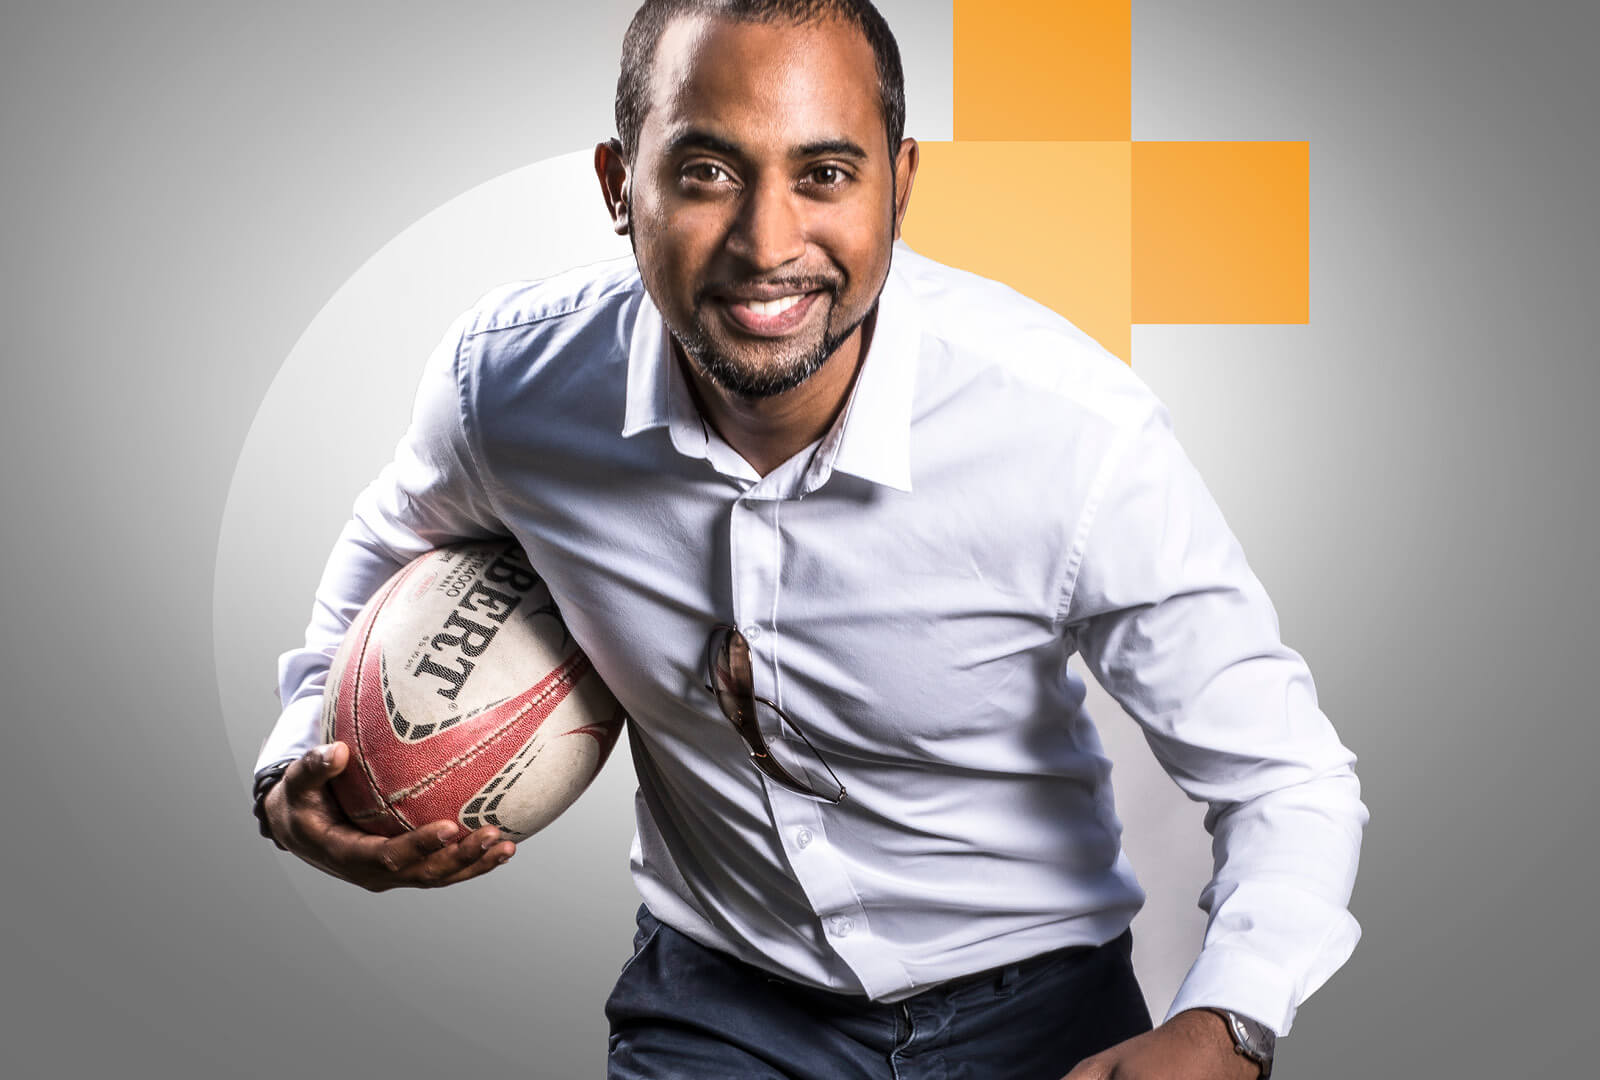 Expert comptable du cabinet Cofif passionné de sport en posture de rugby avec un ballon